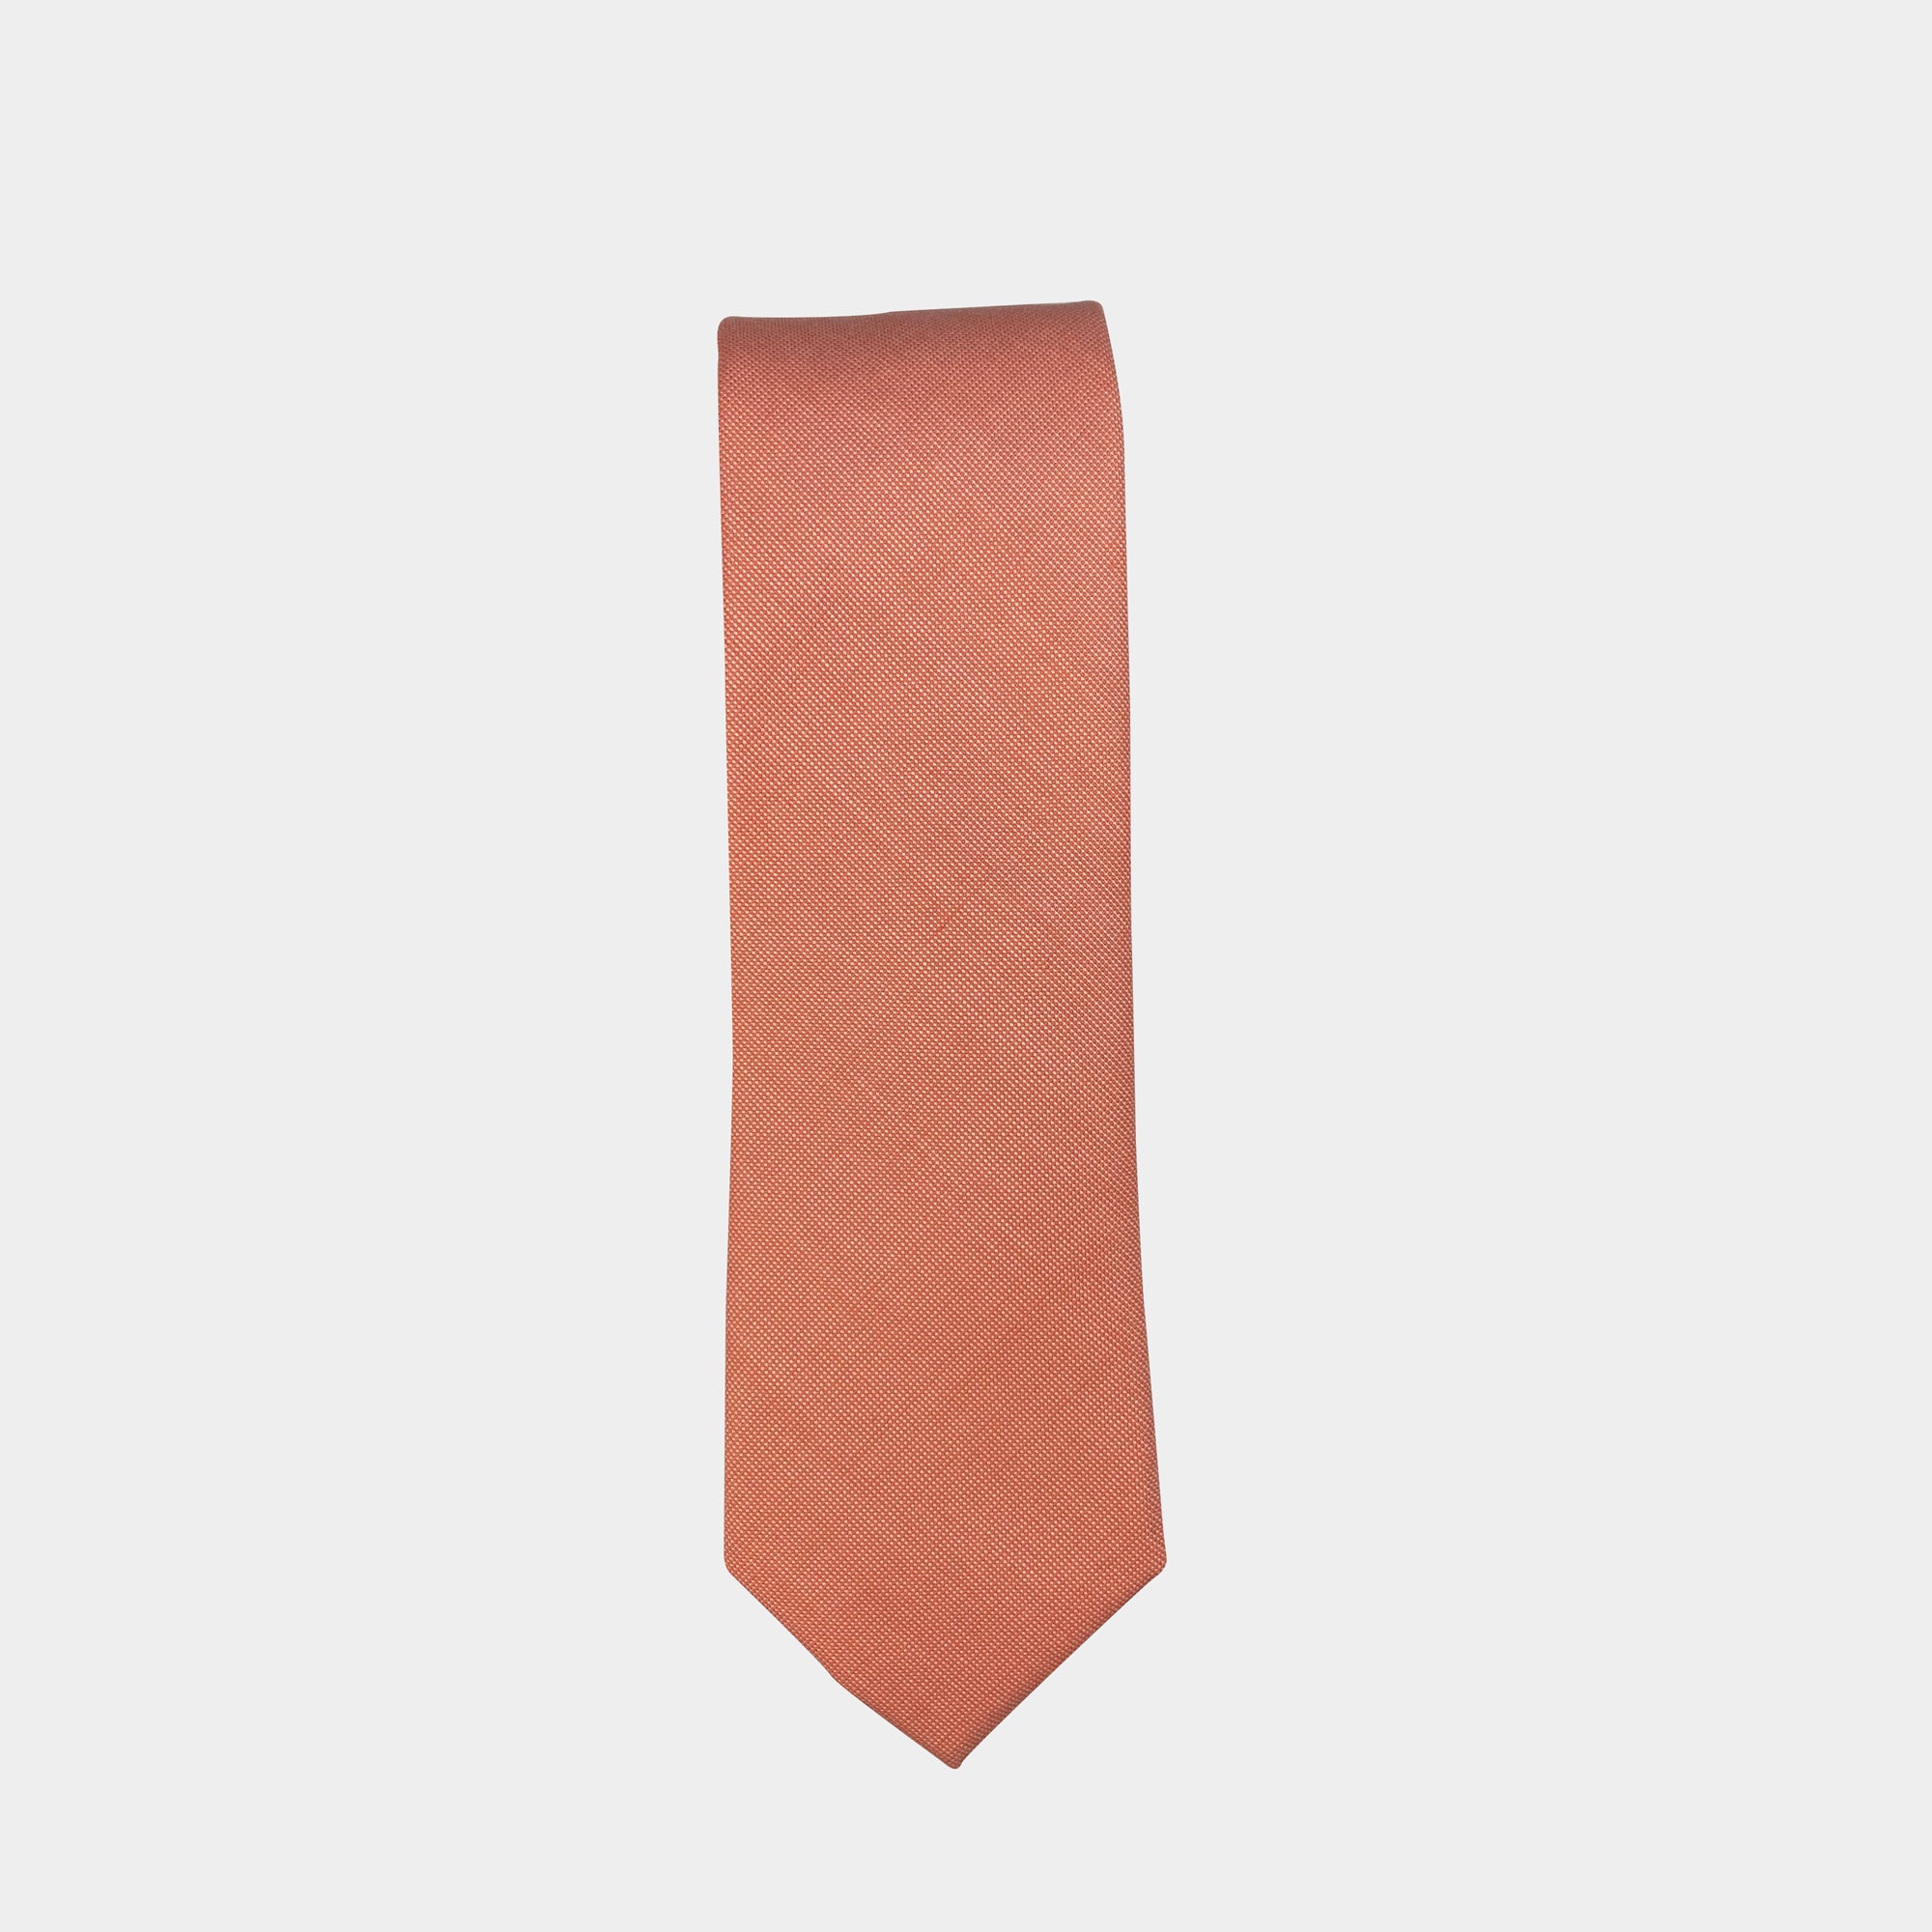 KORI - Men's Tie